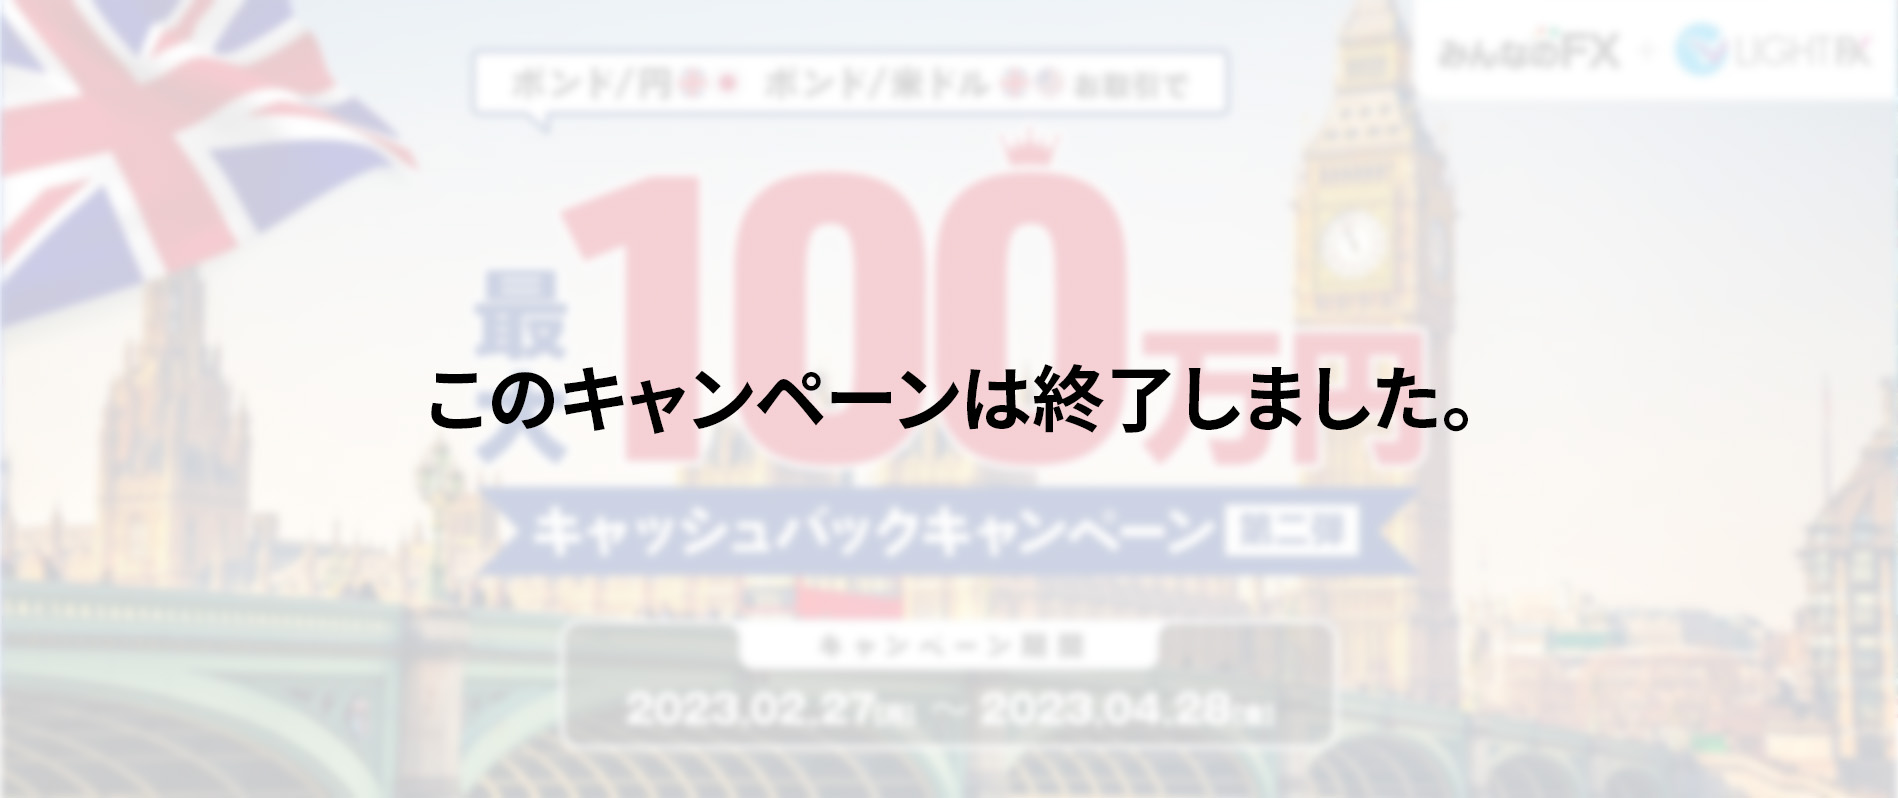 【ポンド/円・ポンド/米ドル】最大100万円キャッシュバックキャンペーン第2弾